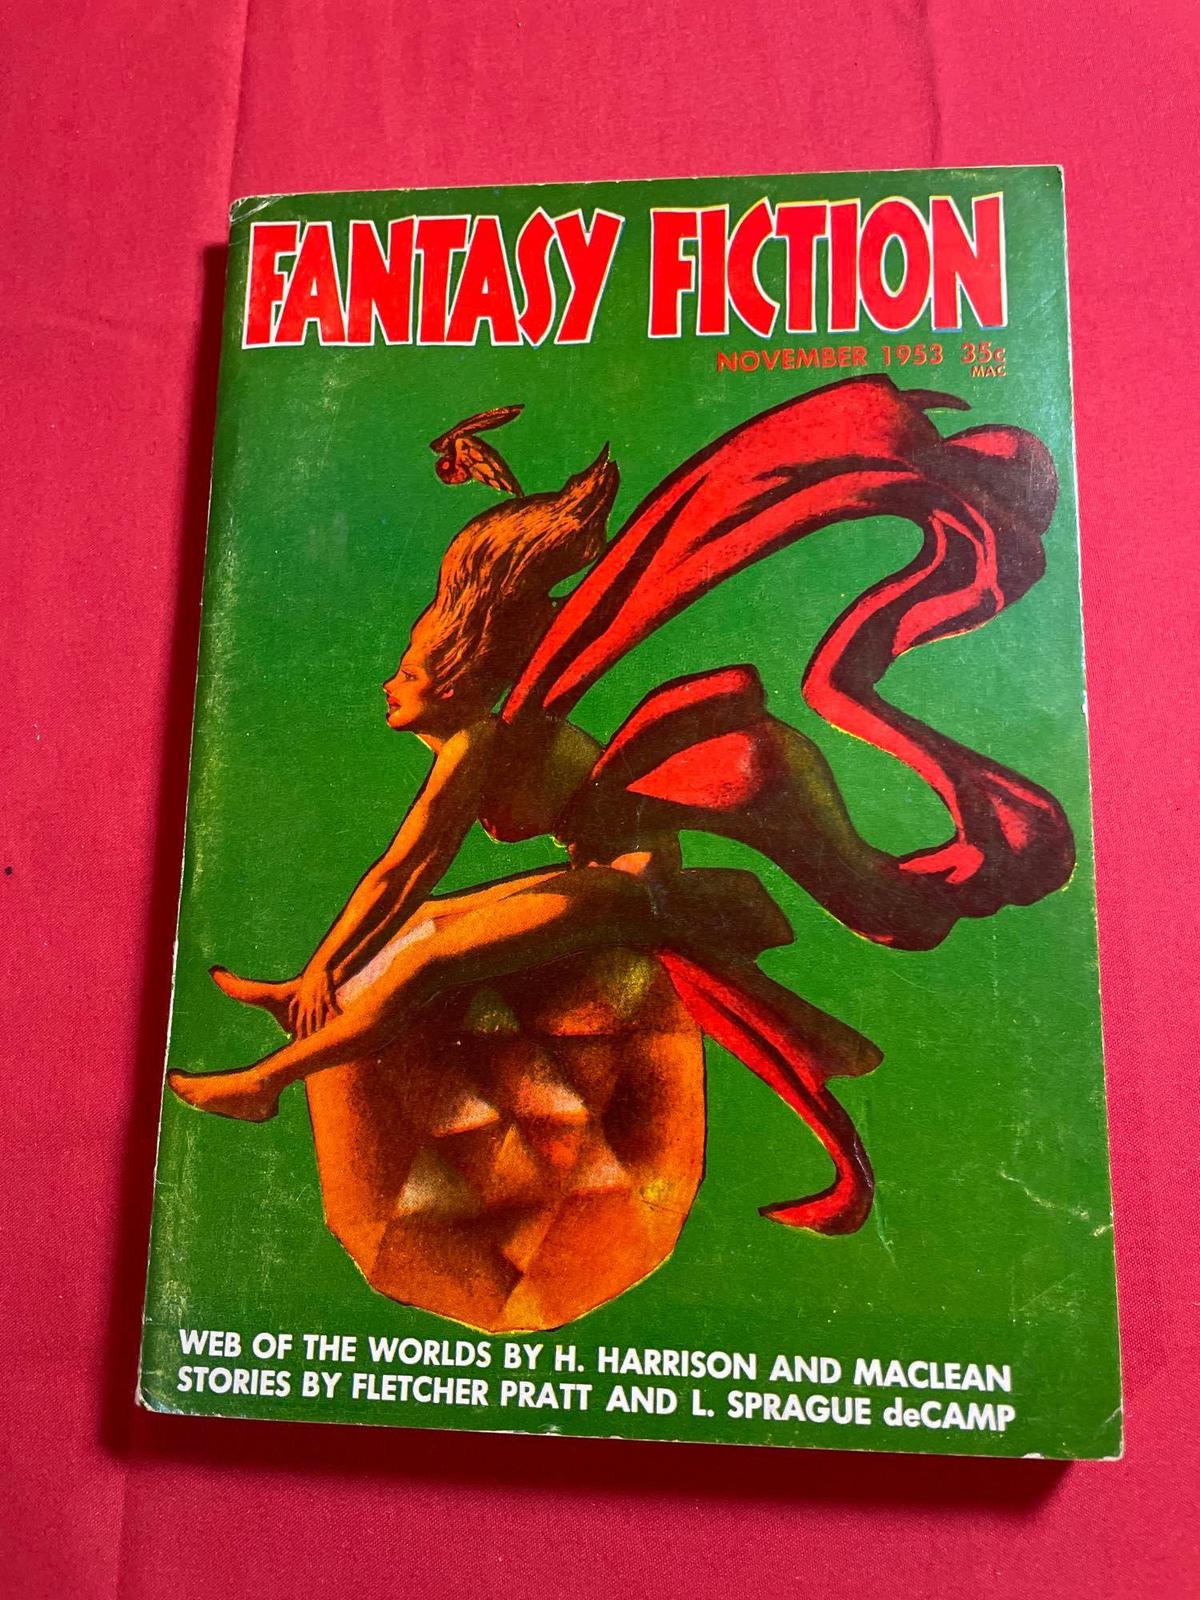 Fantasy Fiction